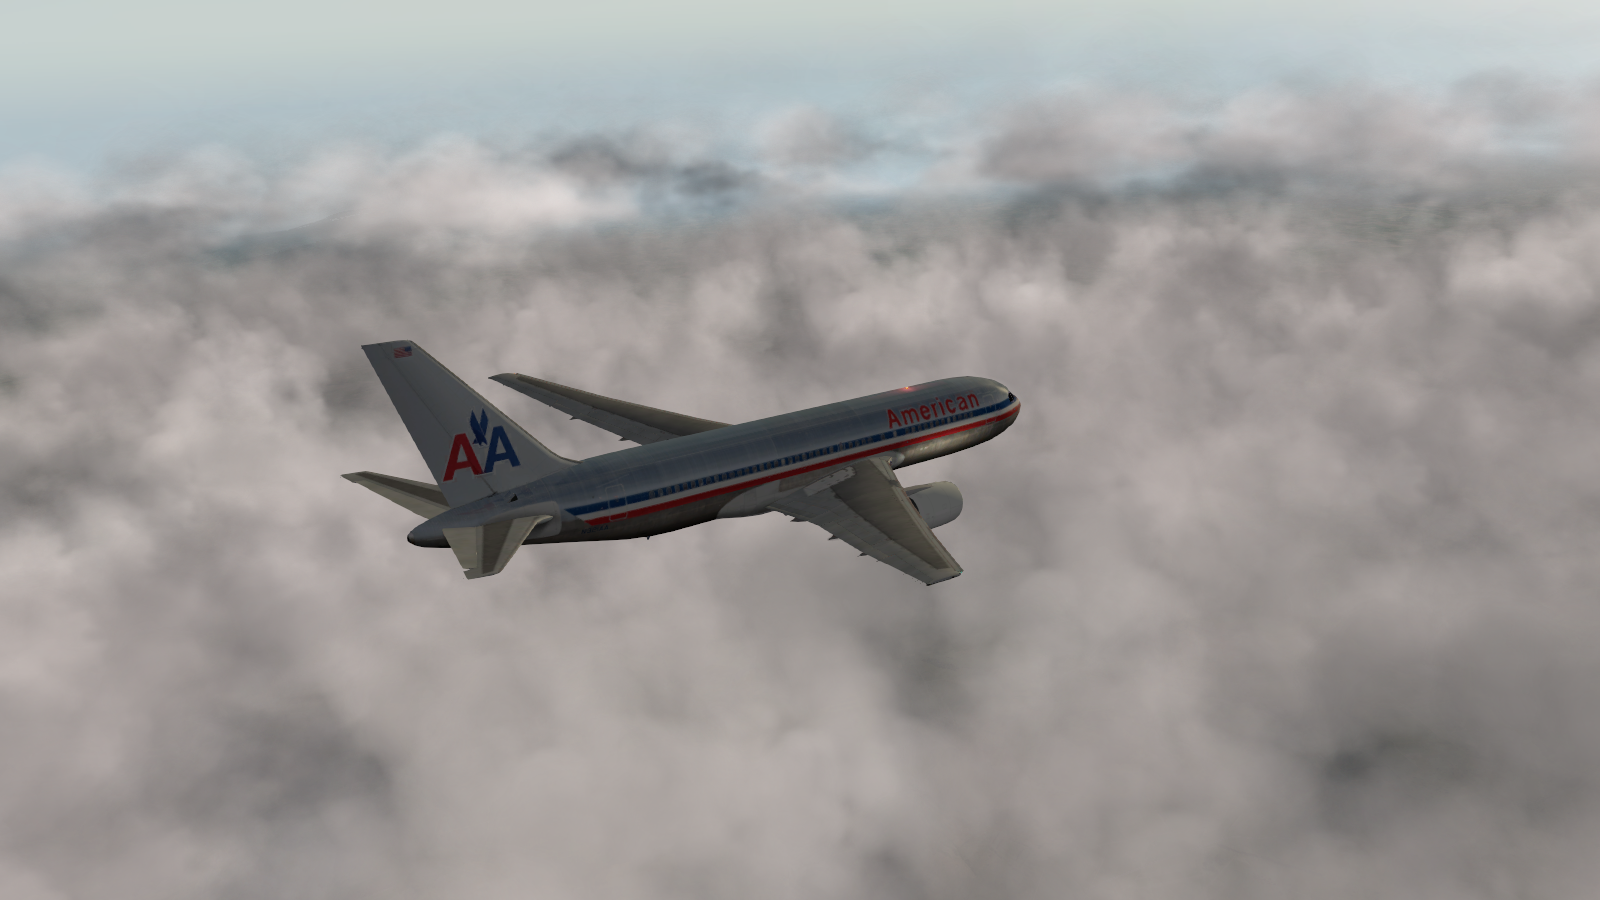 AA 767-200 in the sky